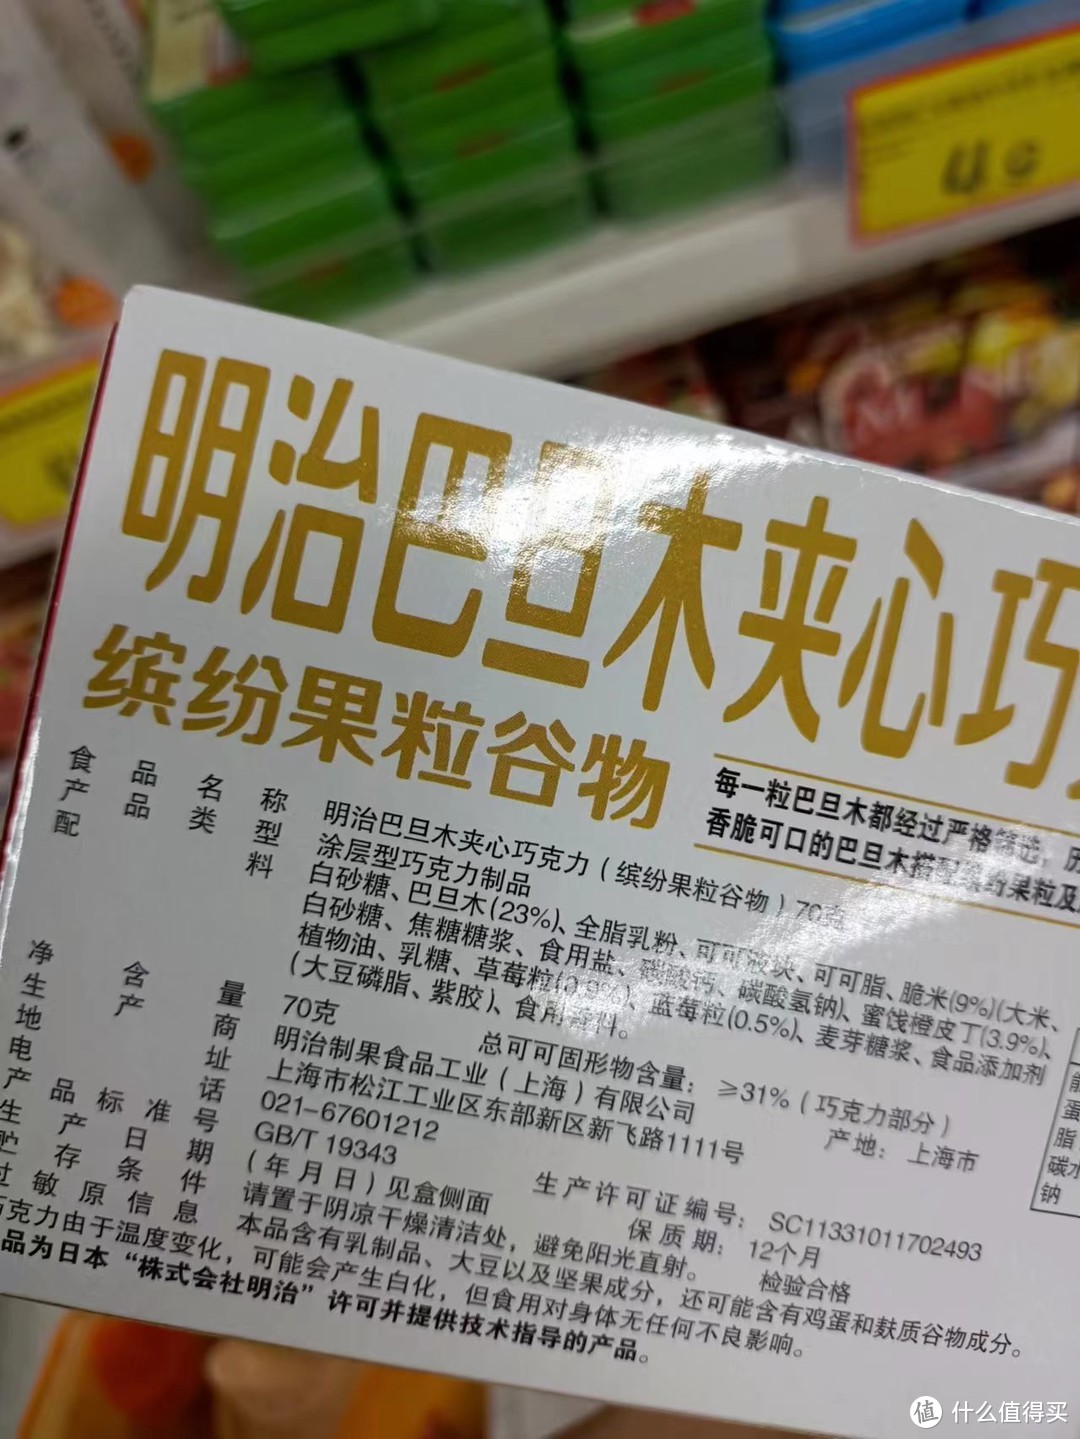 美味与健康共存：日本进口小零食巧克力明治MEIJI杏仁夹心巧克力榛仁